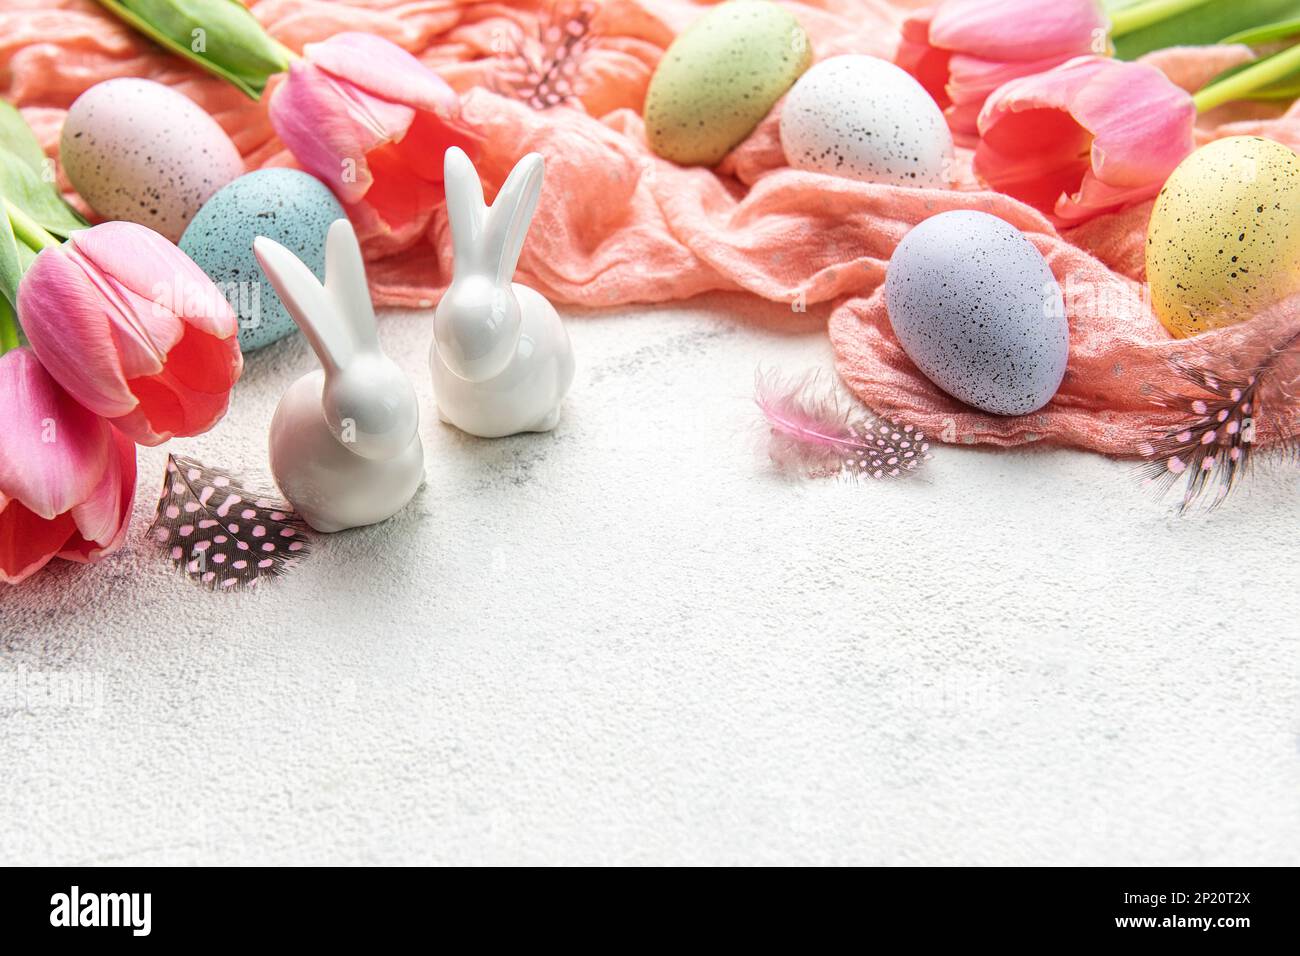 Un ramo de tulipanes, conejos de Pascua y huevos sobre fondo de hormigón. Decoración de Pascua y flores. Tarjeta de felicitación de Pascua. Foto de stock